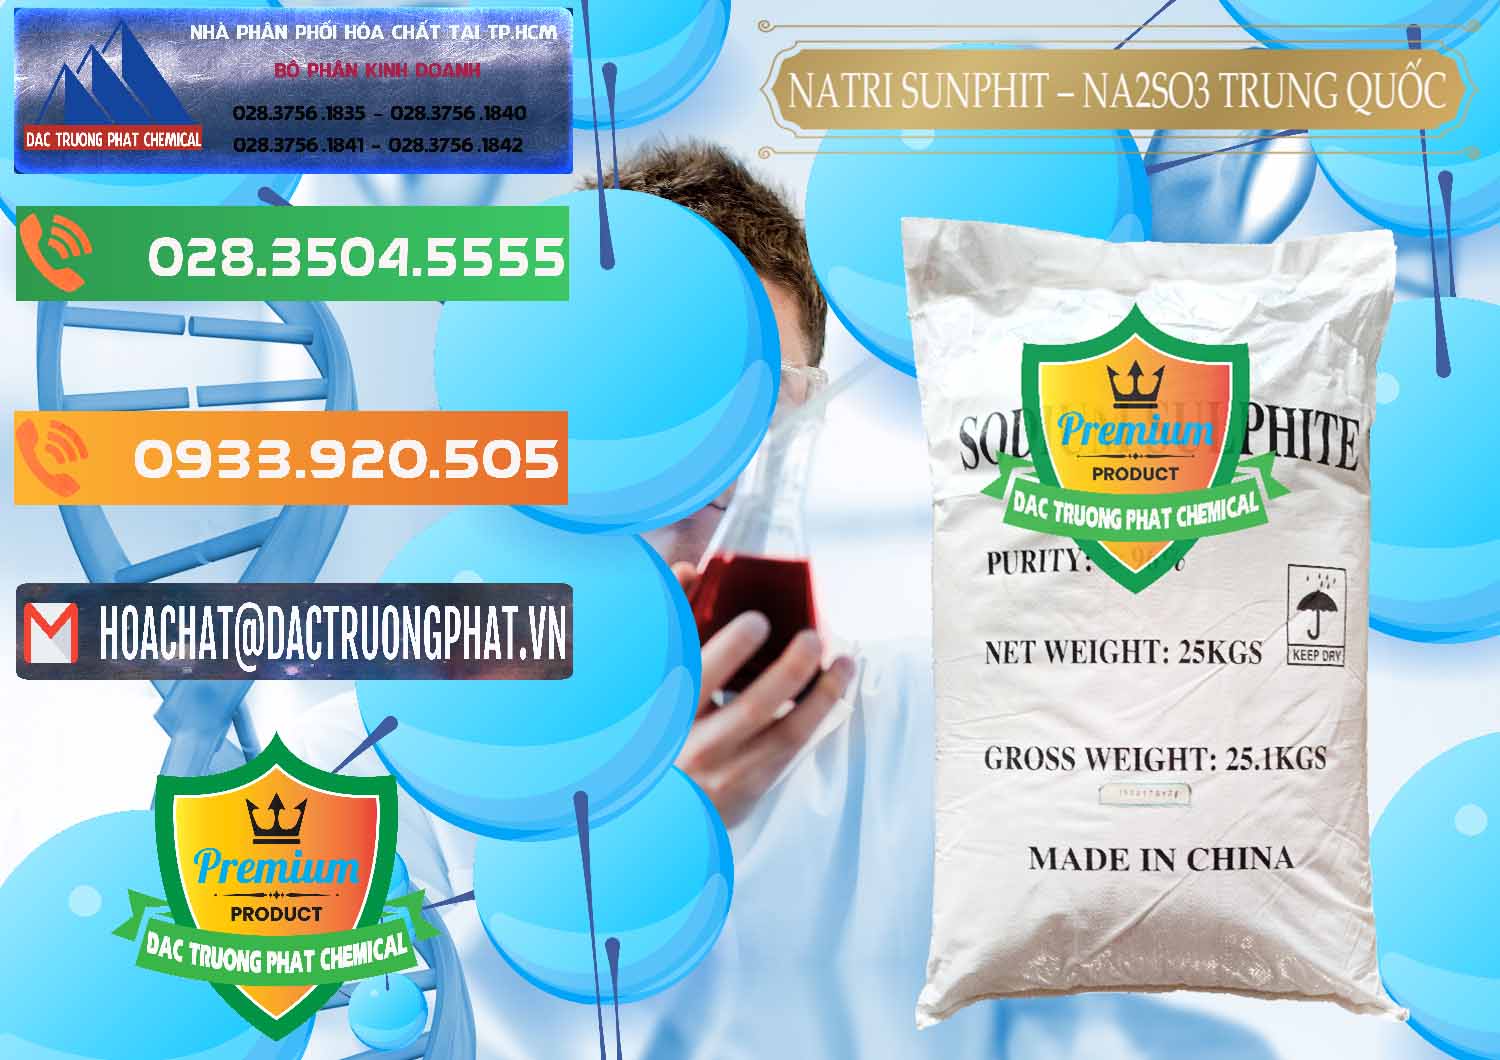 Cty nhập khẩu & bán Natri Sunphit - NA2SO3 Trung Quốc China - 0106 - Đơn vị kinh doanh và phân phối hóa chất tại TP.HCM - hoachatxulynuoc.com.vn